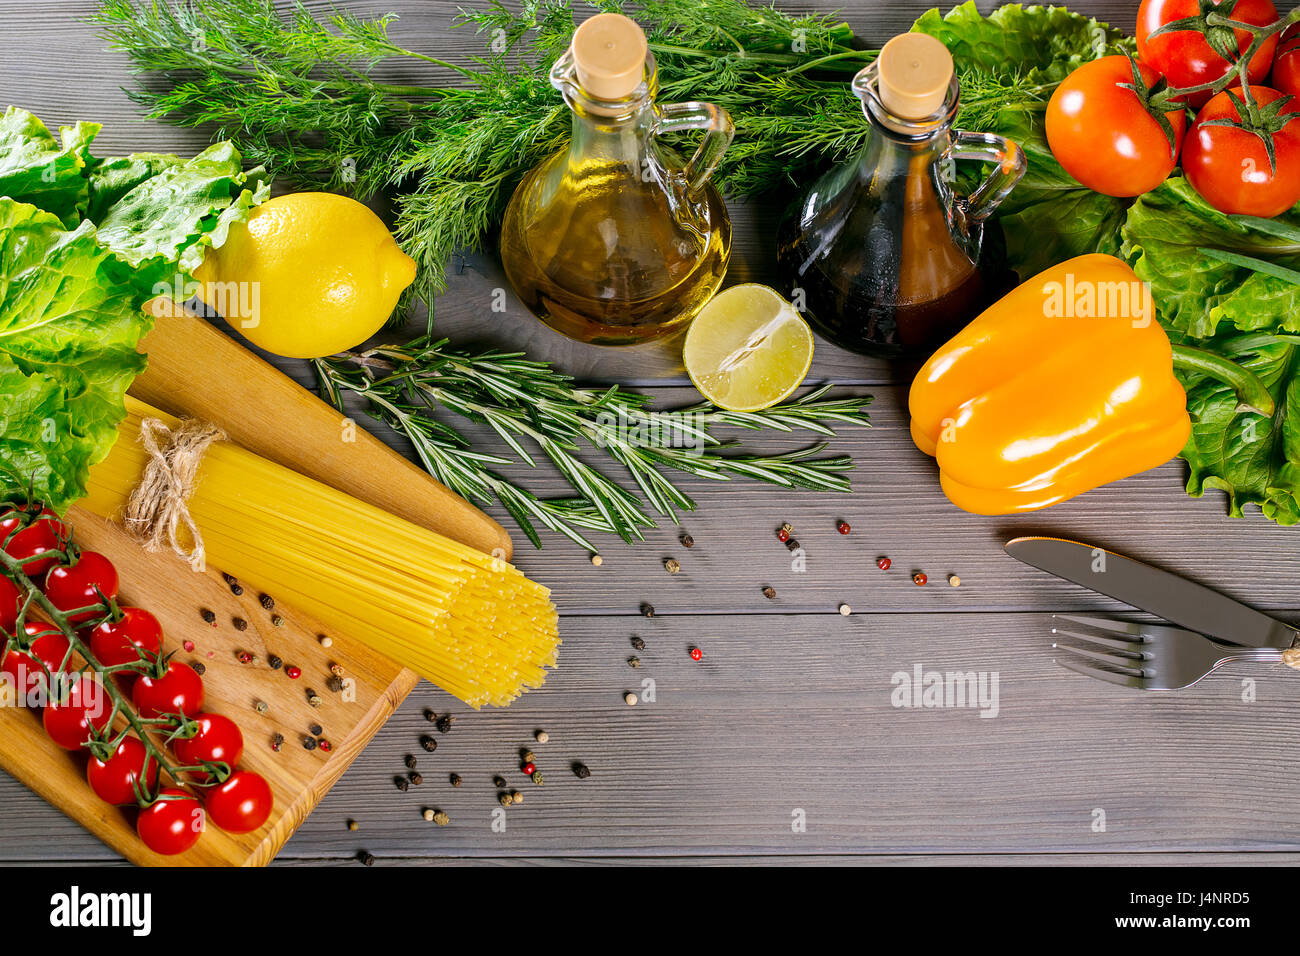 Spaghetti, tomates cerise, huile d'olive, d'herbes et épices sur le vieux fond de bois gris. Définir pour des aliments sains. Ingrédients pour la salade Banque D'Images